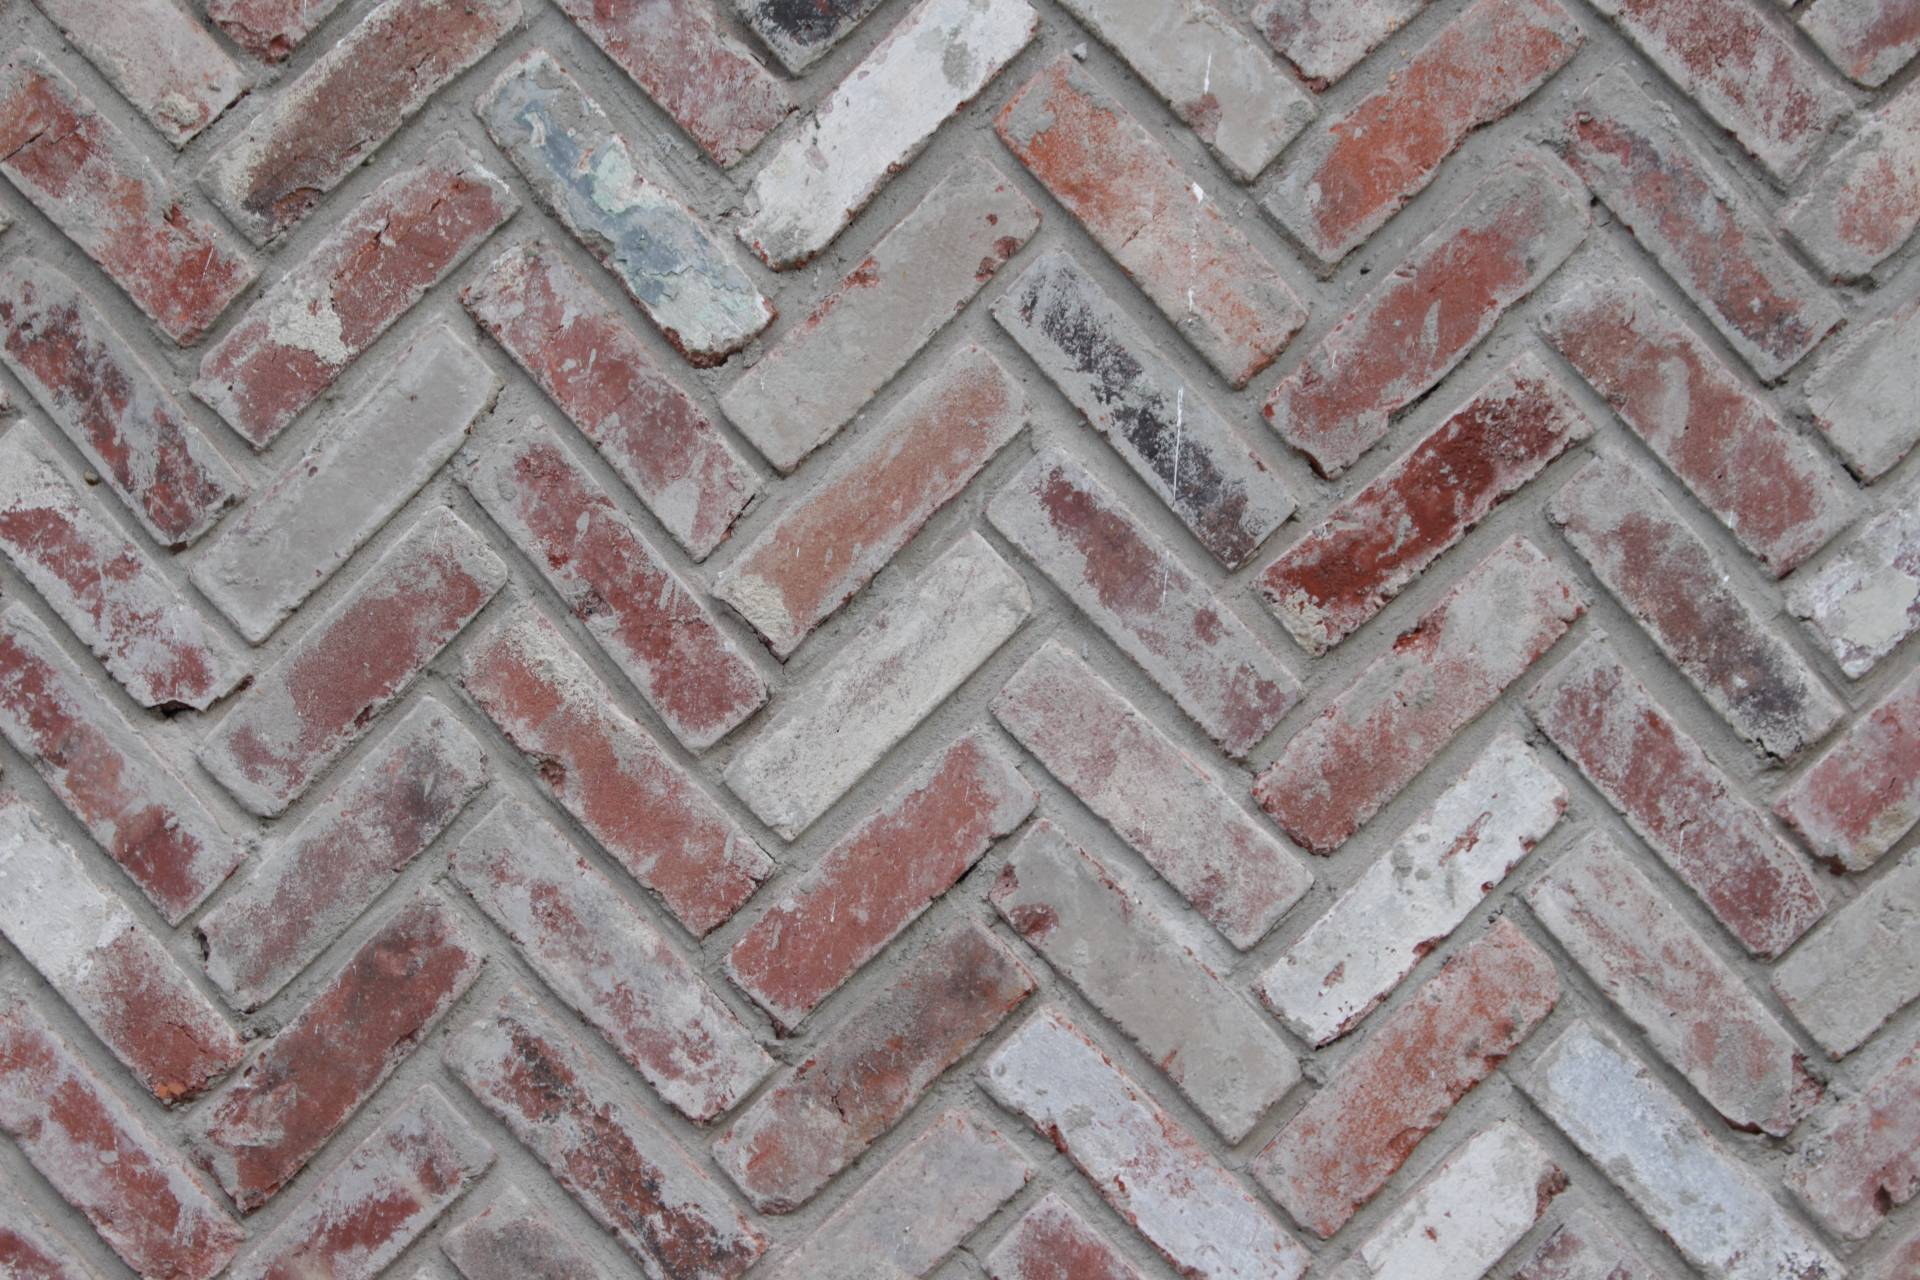 Image of brick walkway in pattern